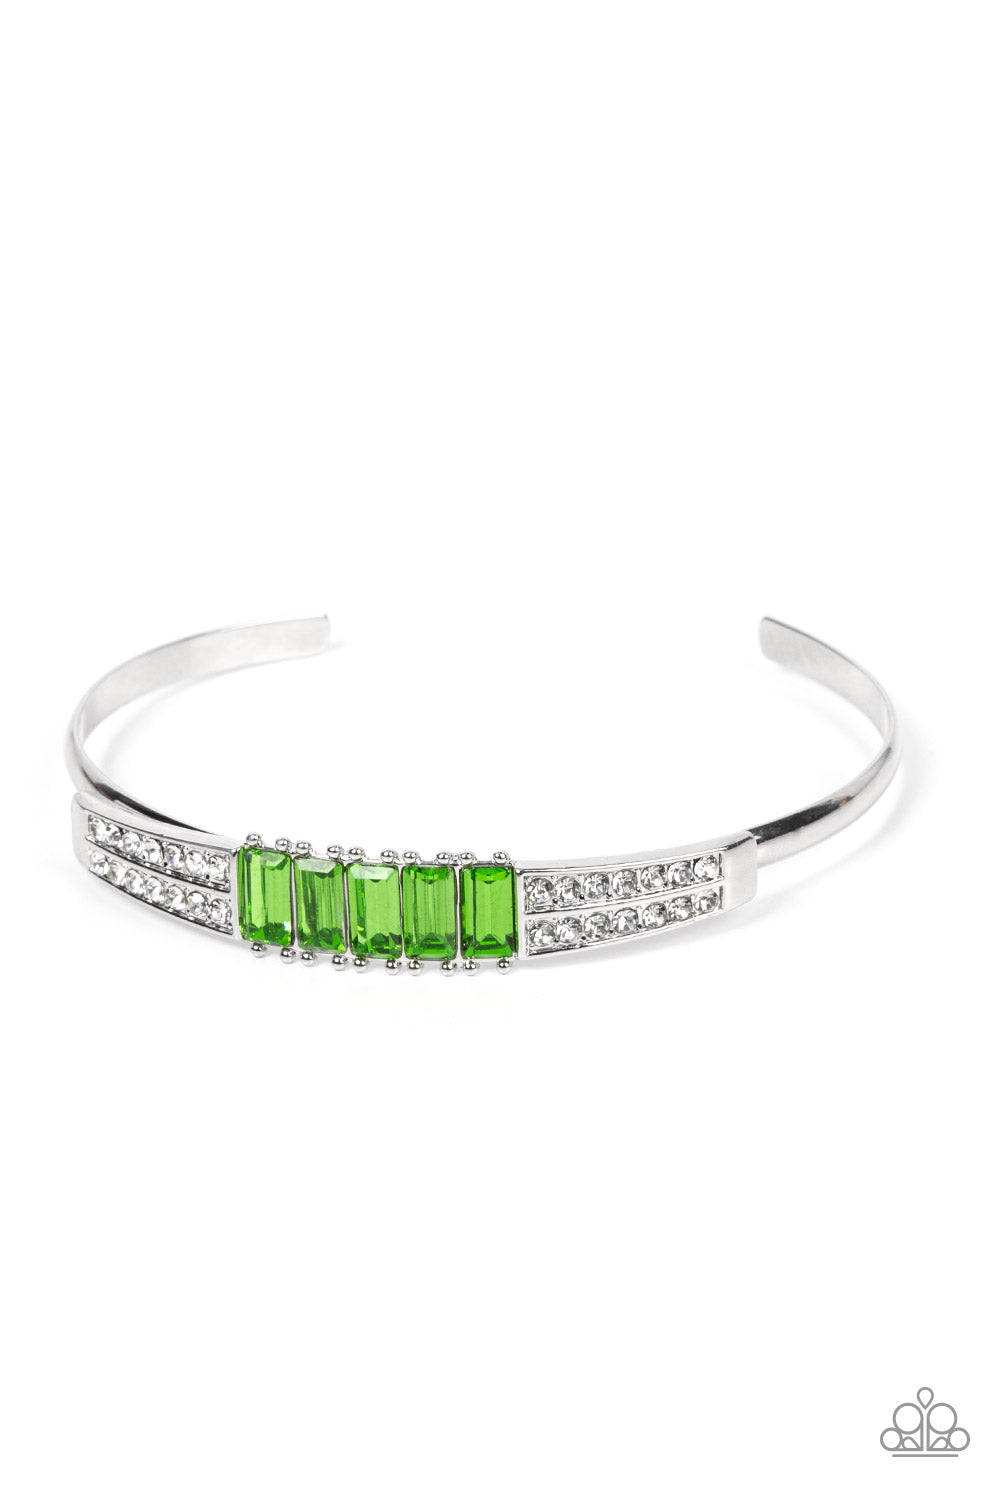 Spritzy Sparkle - green - Paparazzi bracelet